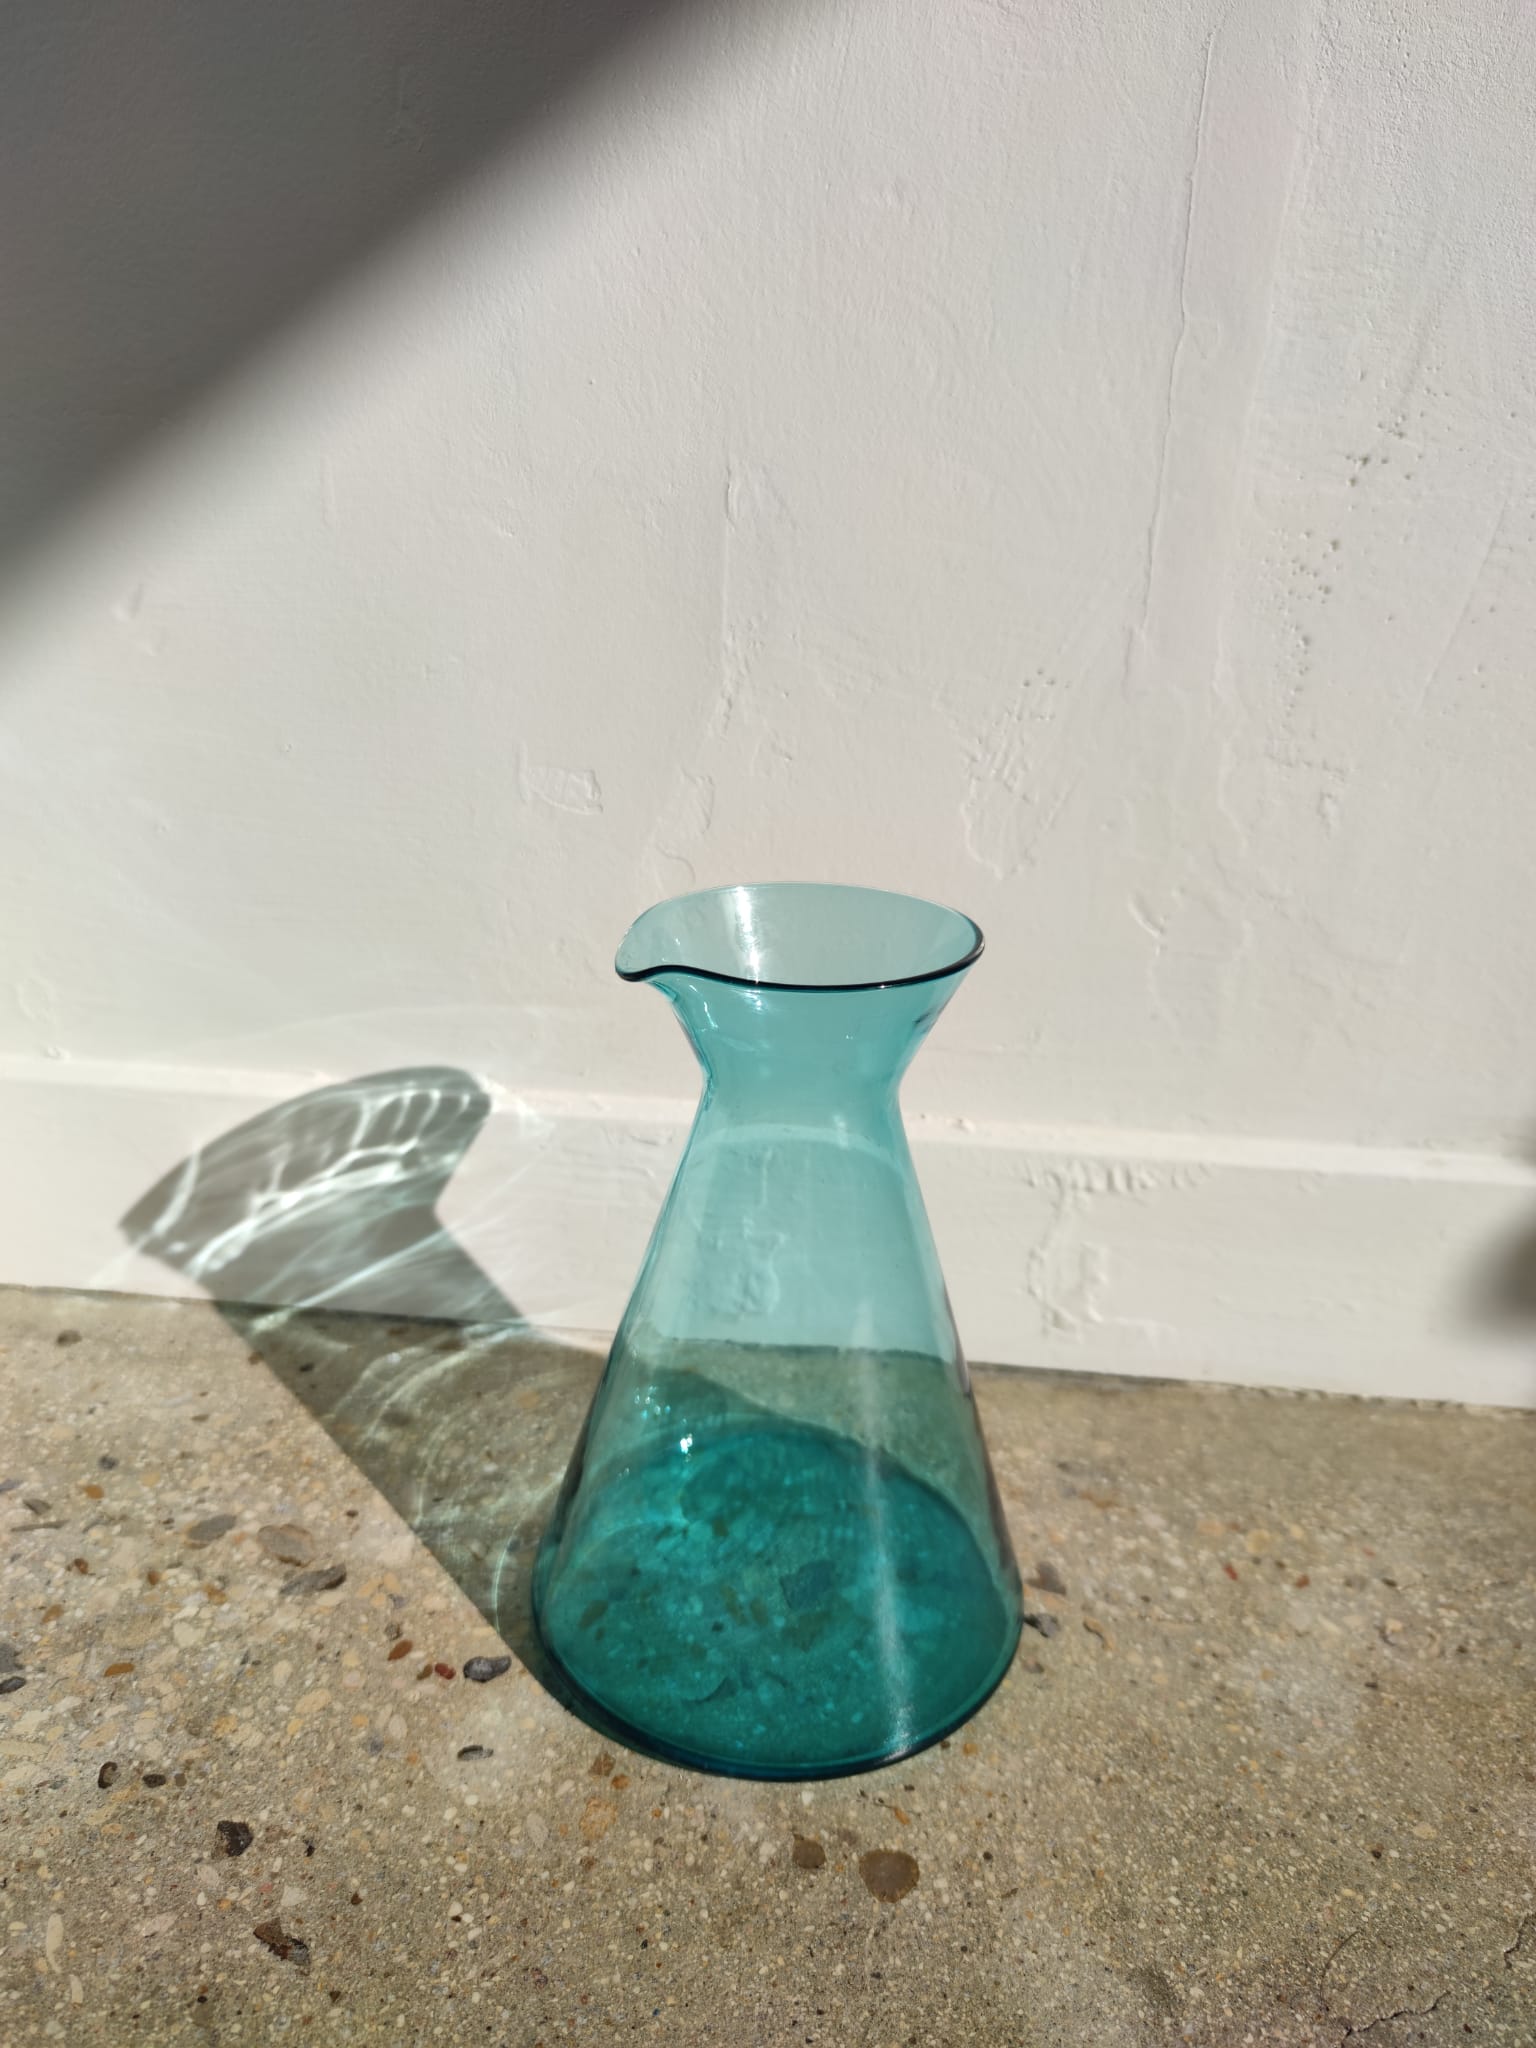 Carafe géométrique évasée conique en verre teinté turquoise